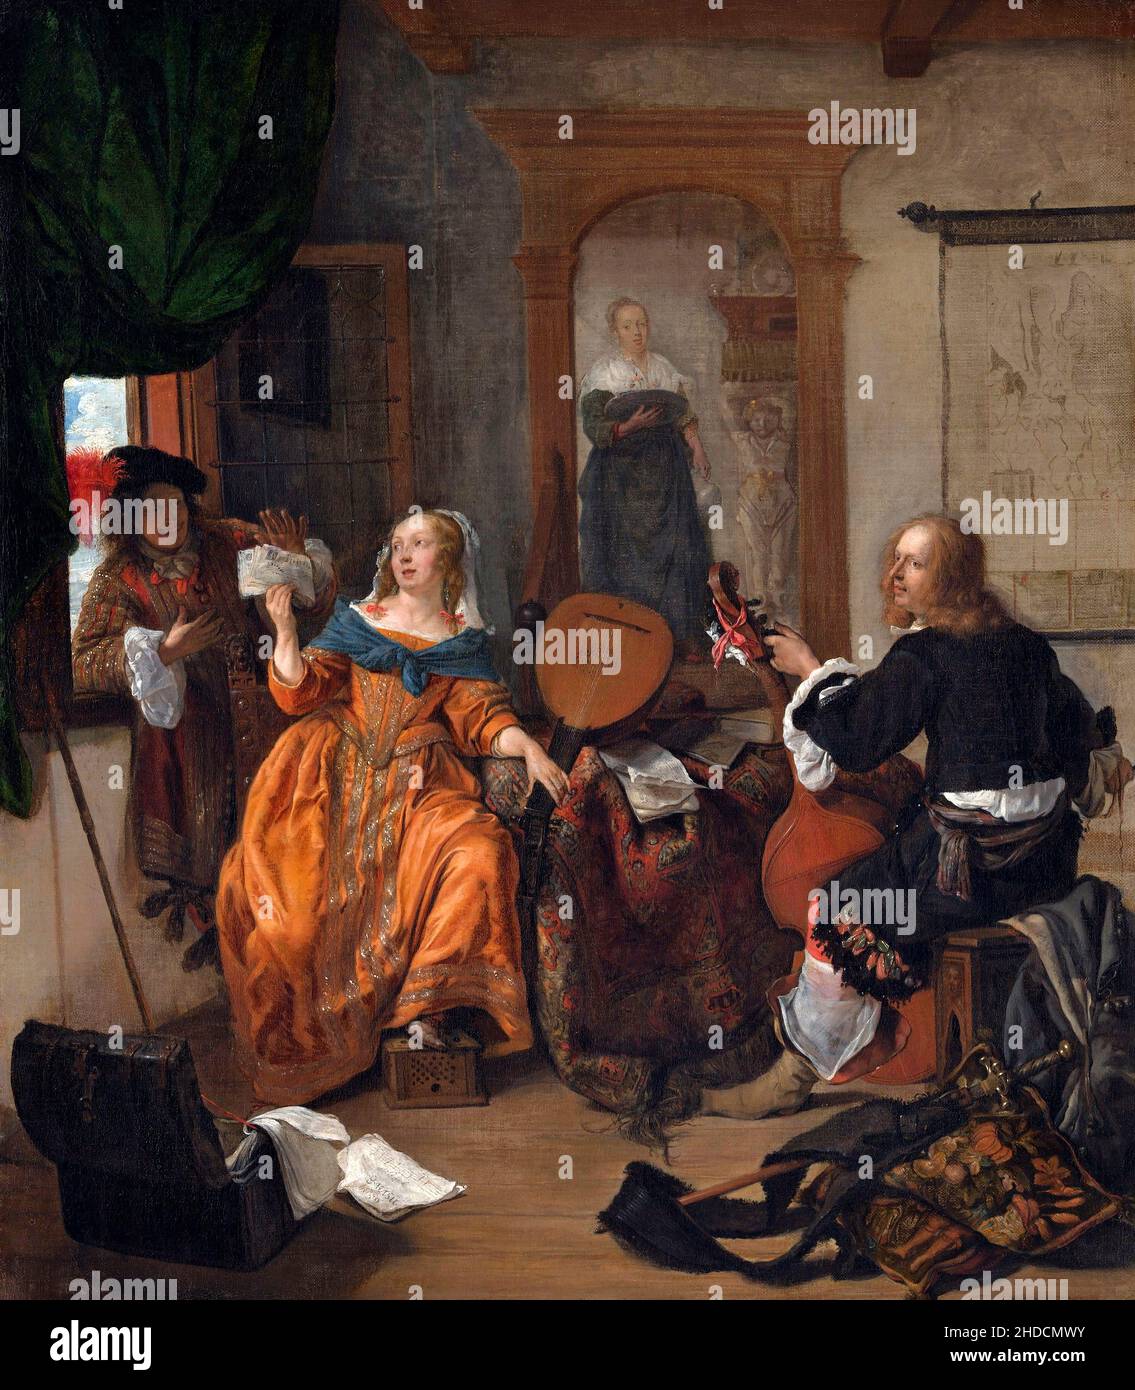 Une fête musicale de l'artiste néerlandais Gabriël Metsu (1629-1667), huile sur toile, 1659 Banque D'Images